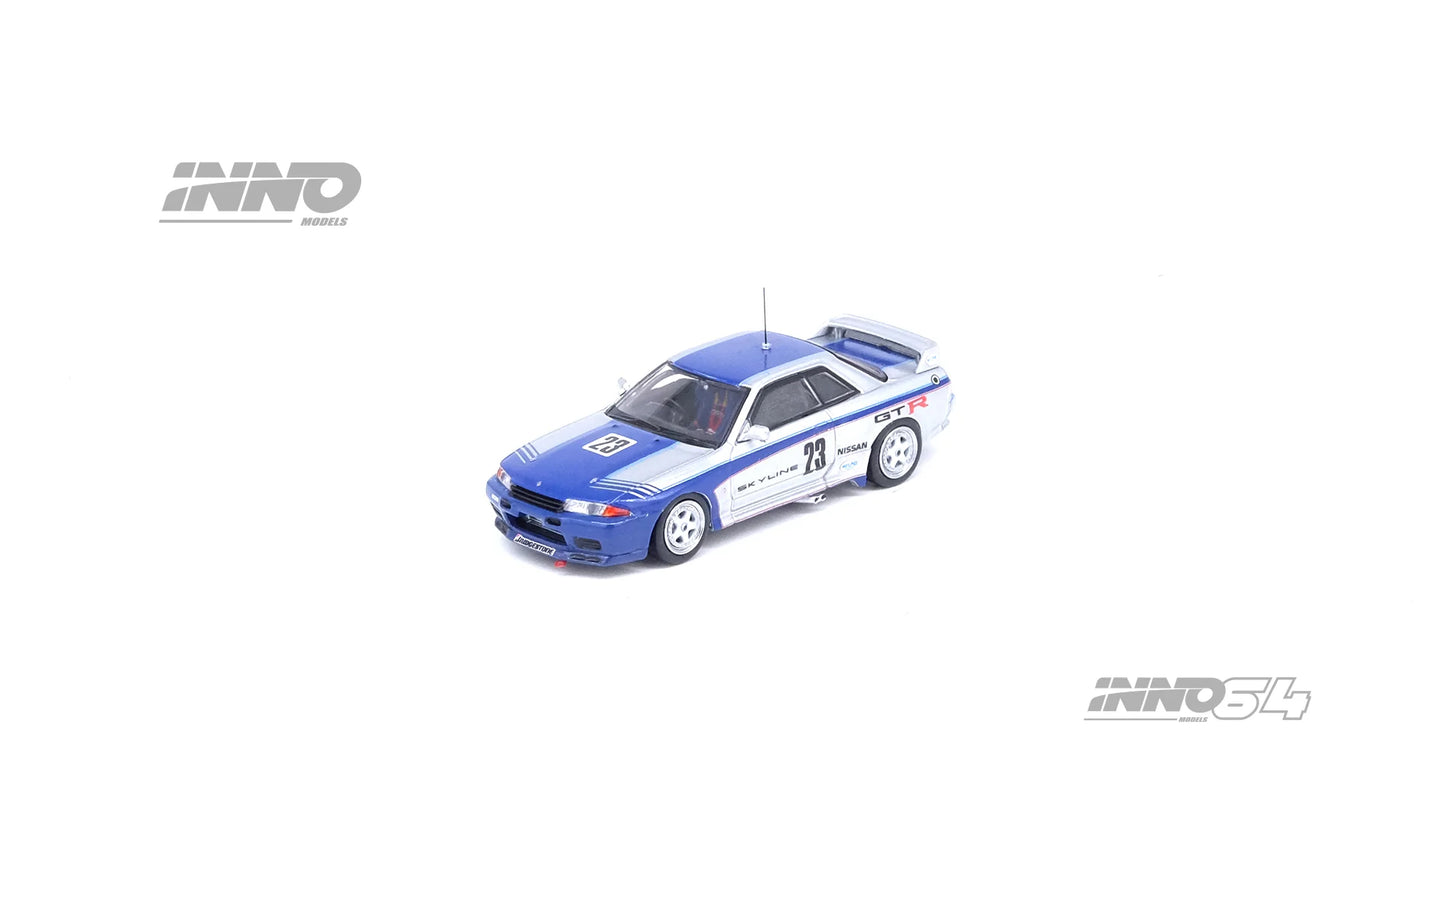 INNO 64 1/64 NISSAN SKYLINE GT-R (R32) GR.A TEST CAR 1989